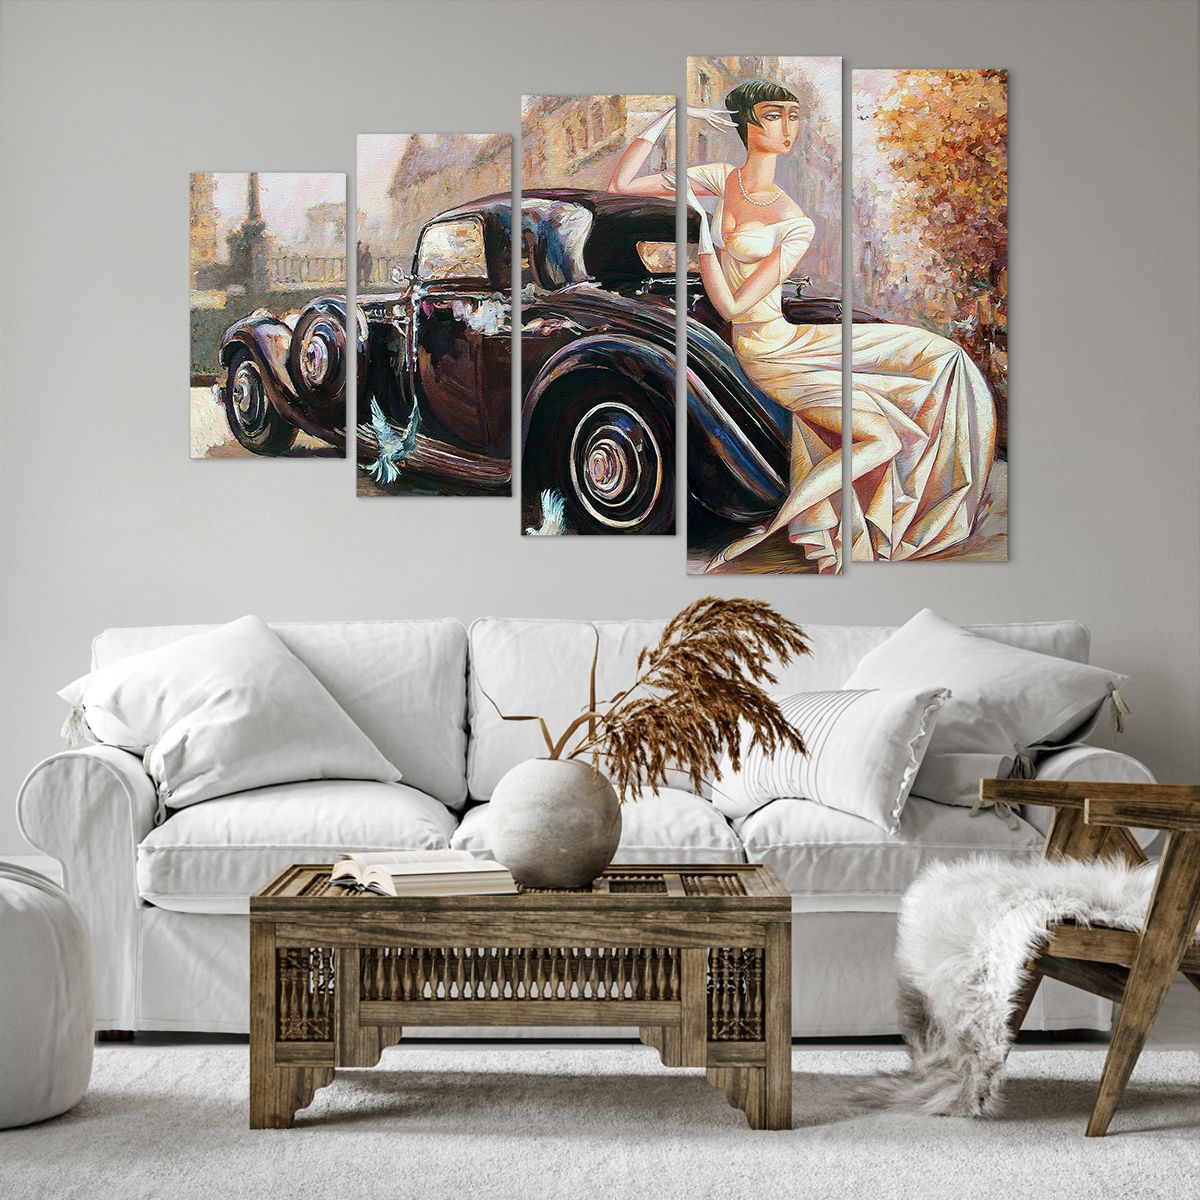 Bild auf Leinwand Retro-Auto, Bild auf Leinwand Frau, Bild auf Leinwand Palast, Bild auf Leinwand Automobil, Bild auf Leinwand Kunst